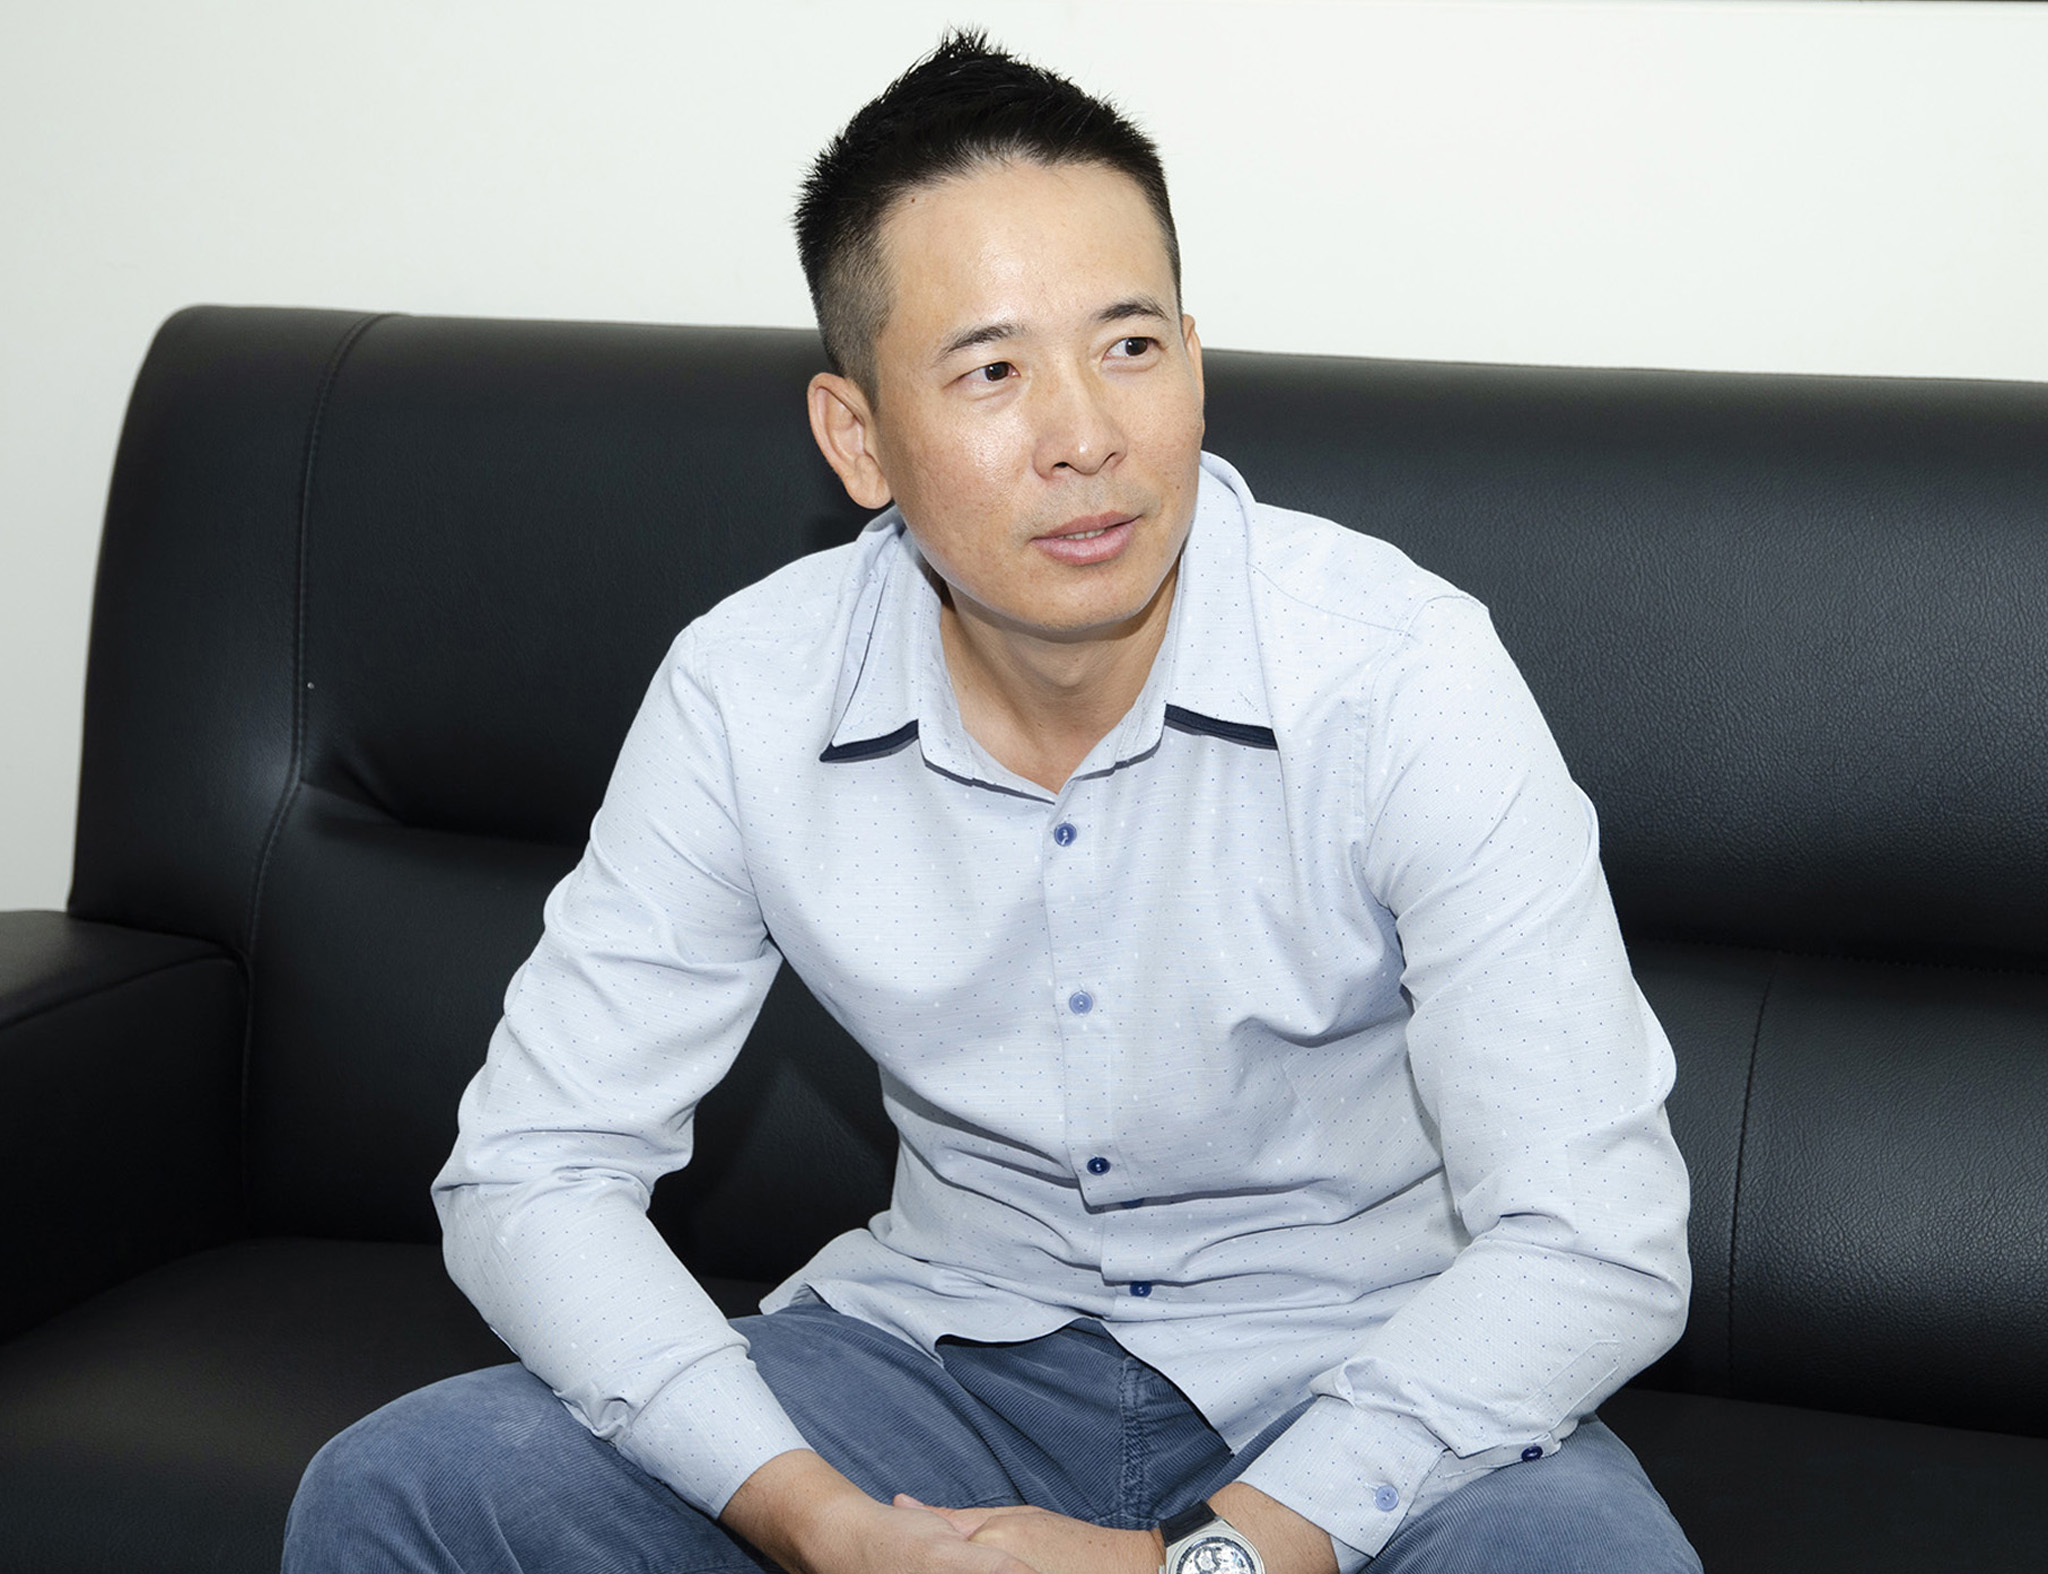 錦融有限公司創辦人陳建榮總經理暢談共好的事業願景。